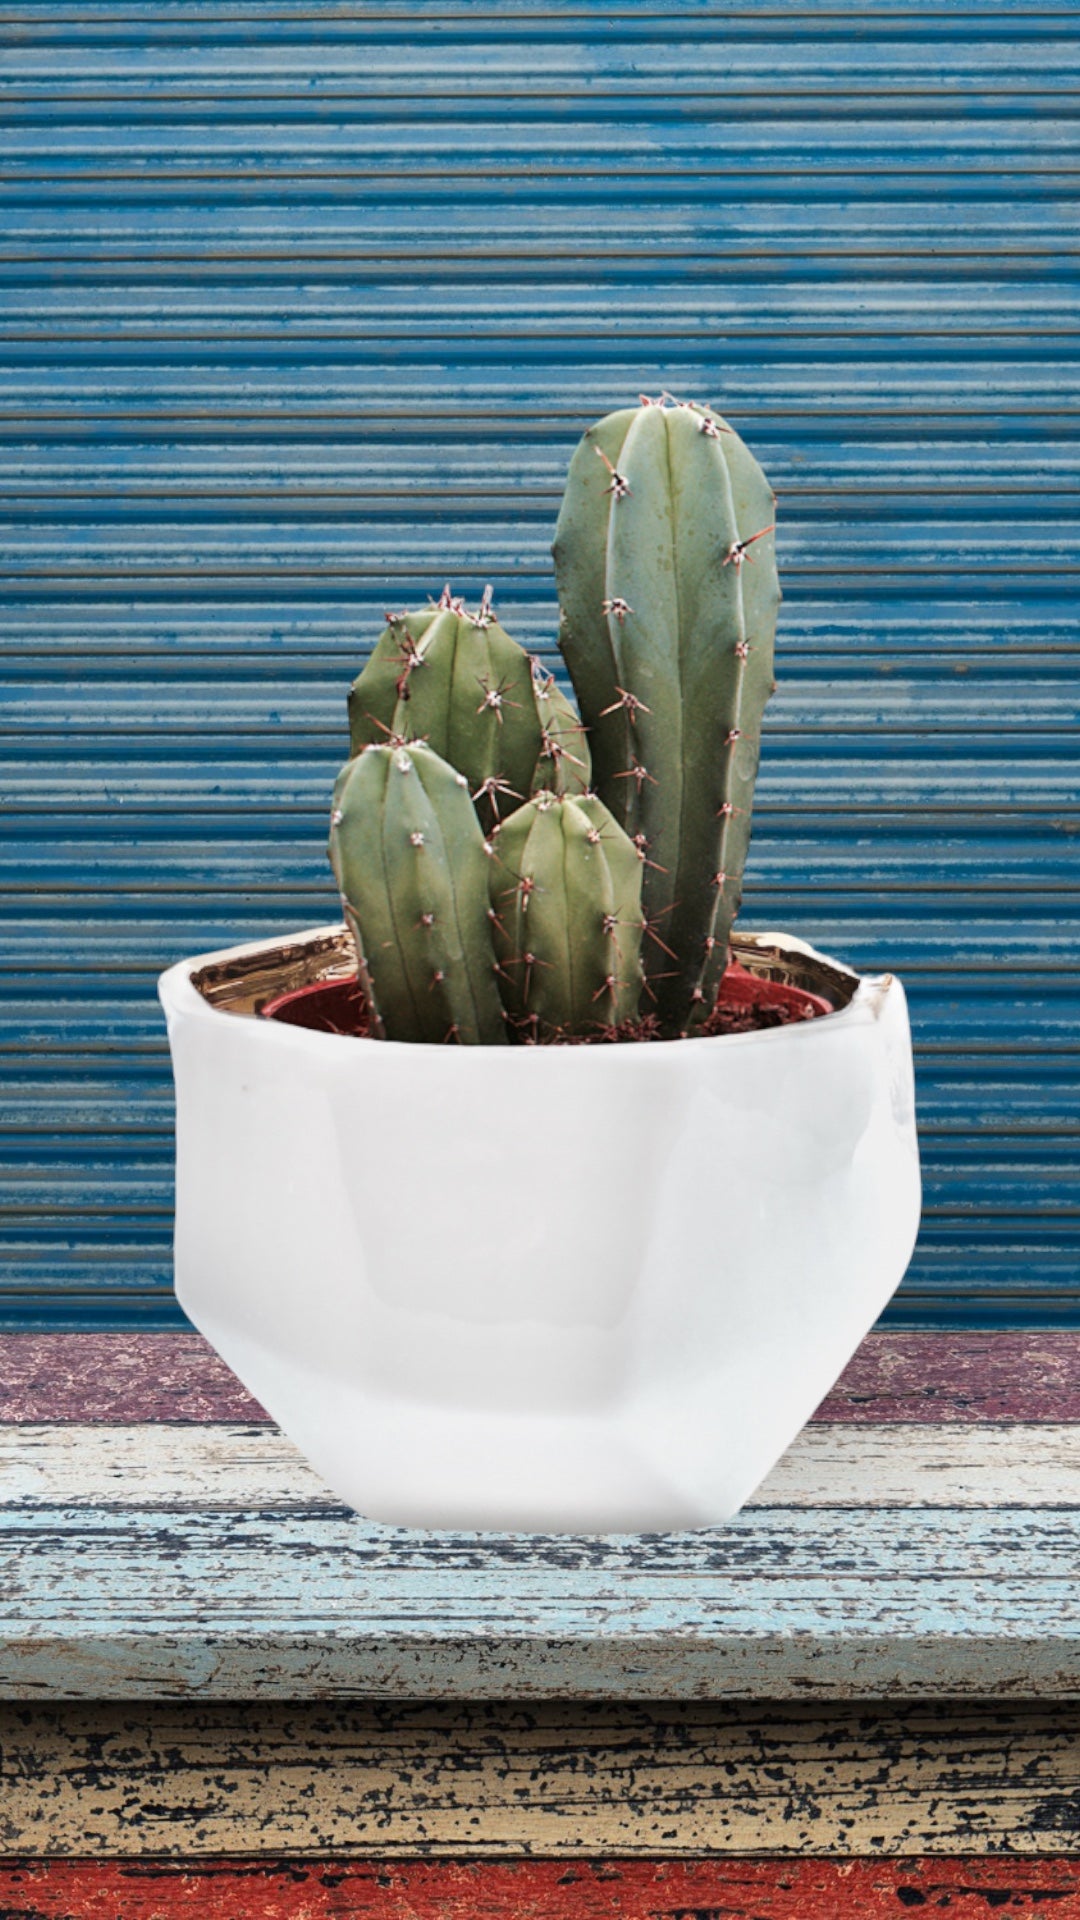 Handmade Elegant White & Gold Ceramic Planter/Pot